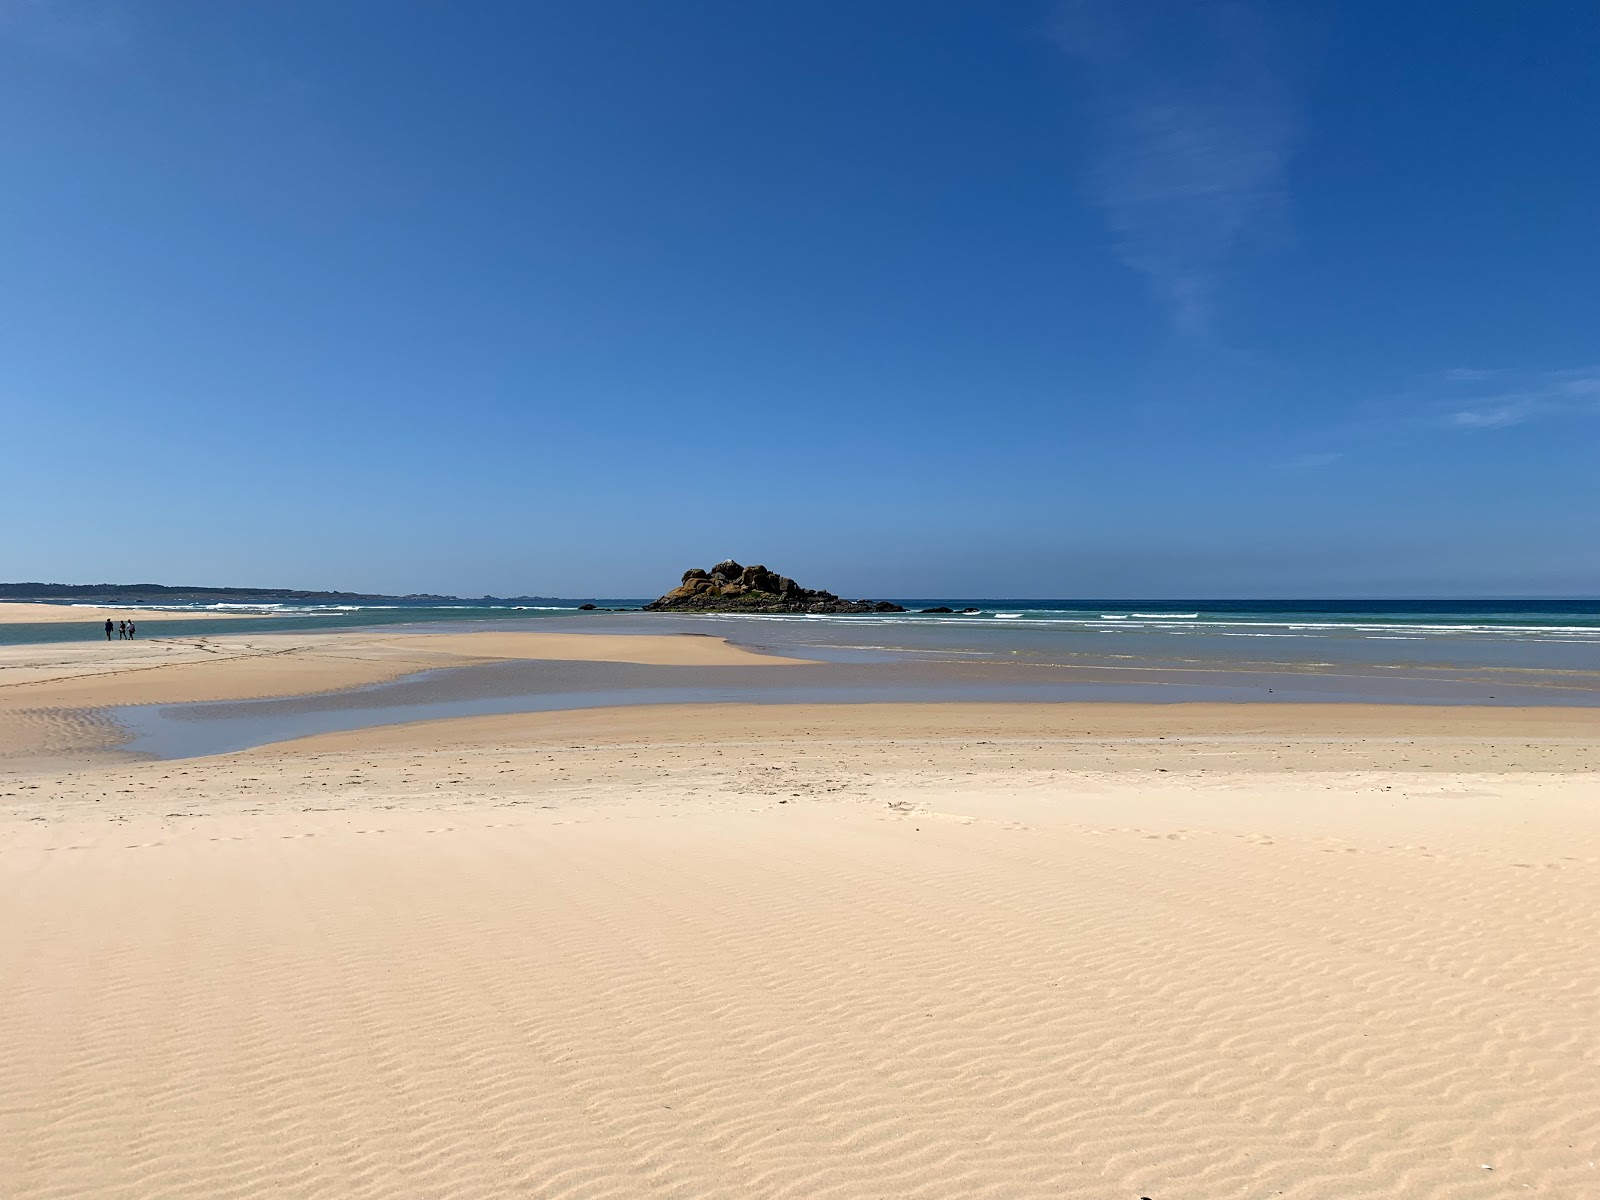 Fotografie cu Lagoa beach cu o suprafață de nisip fin strălucitor